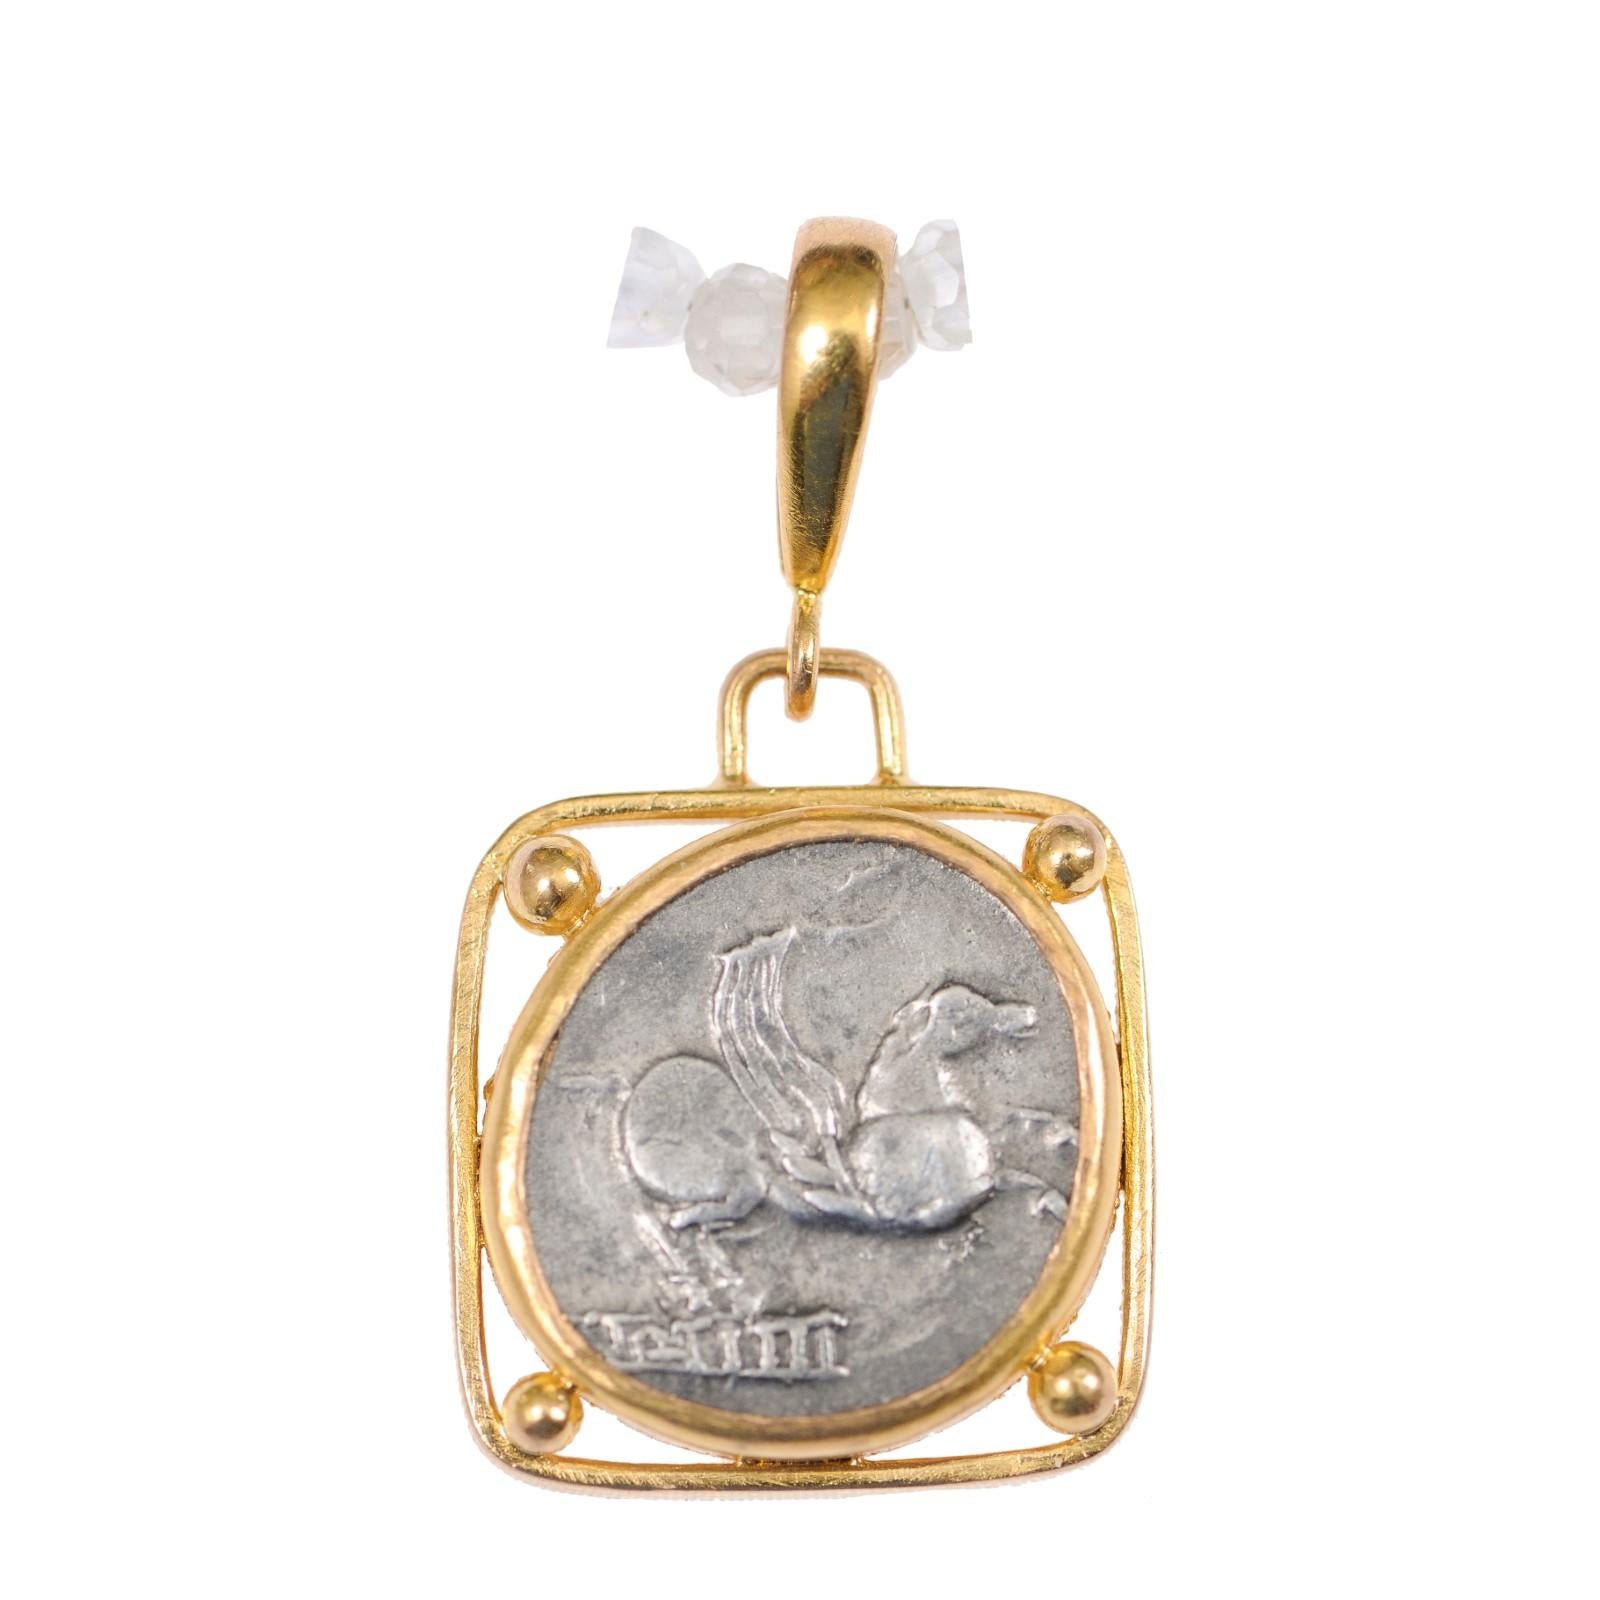 Une authentique pièce de Q. Titius, denier d'argent (Rome, vers 90 avant J.-C.), sertie dans un chaton en or 22 carats personnalisé, suspendue dans une lunette carrée avec des accents de perles d'or à chaque coin, et une anse en or 22 carats.